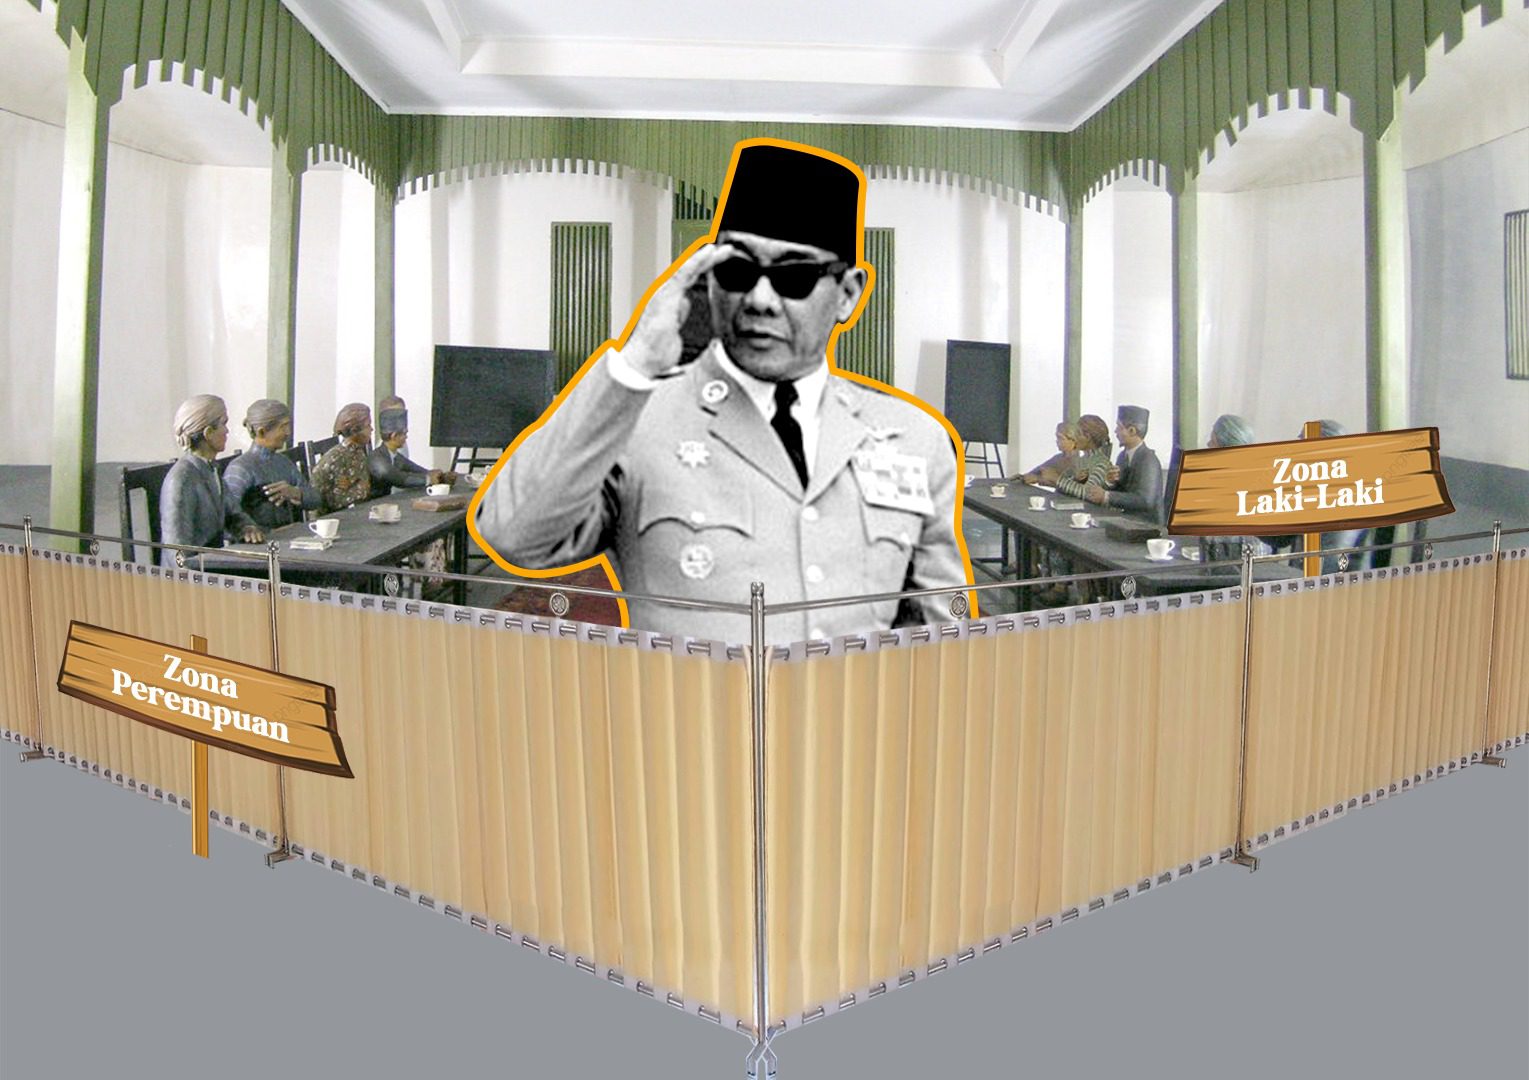 Kisah Soekarno Walk Out di Rapat Muhammadiyah Karena Tabir, Niat Utama Menjaga Islam Berkemajuan ala Muhammadiyah